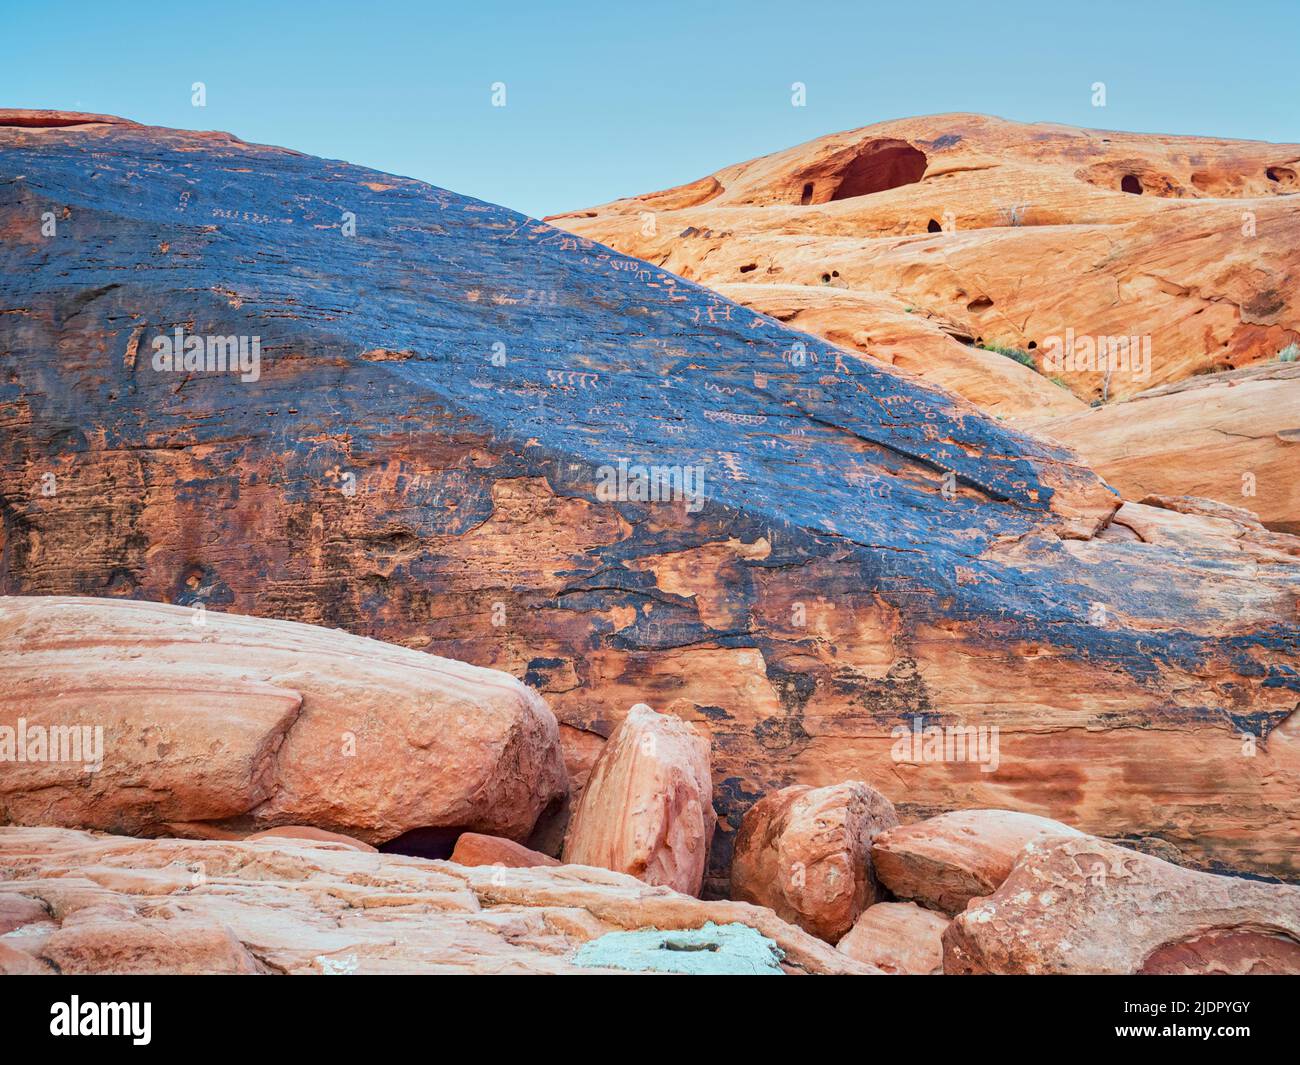 Formazioni di roccia rossa con incisioni rupestri di roccia di antiche culture degli Indiani d'America nel deserto di Mojave, nel parco statale della Valle del fuoco, Nevada Foto Stock